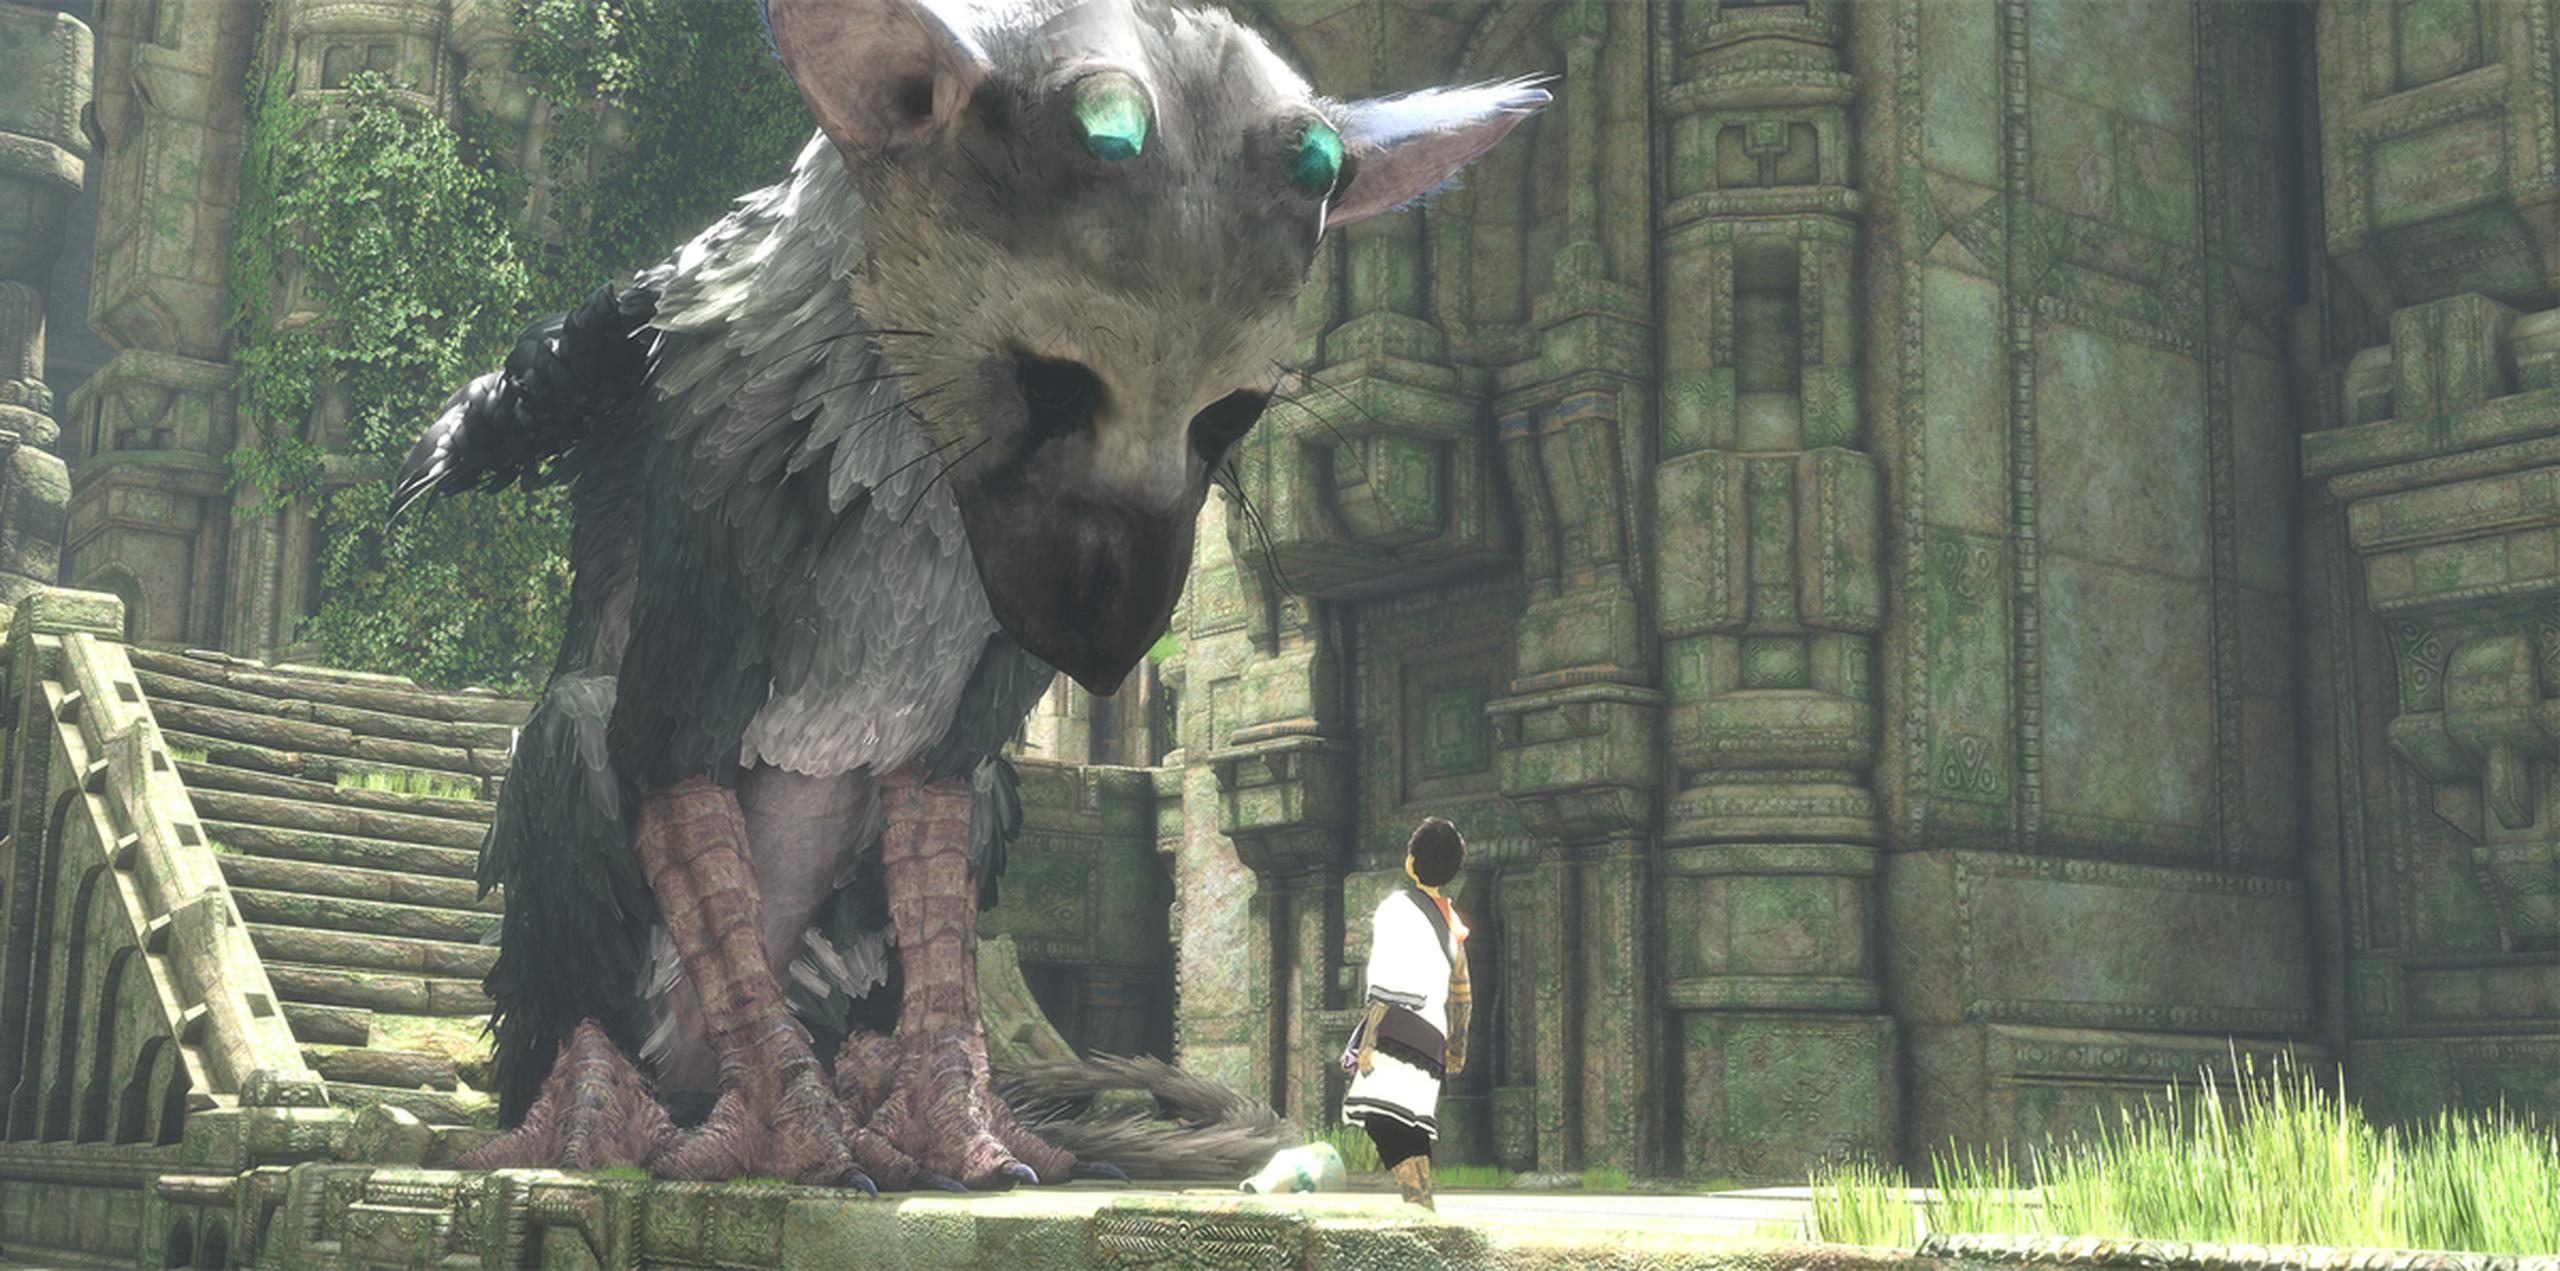 Exclusivo para PlayStation 4, "The Last Guardian" apoya su peso en la narrativa y las mecánicas de juego.